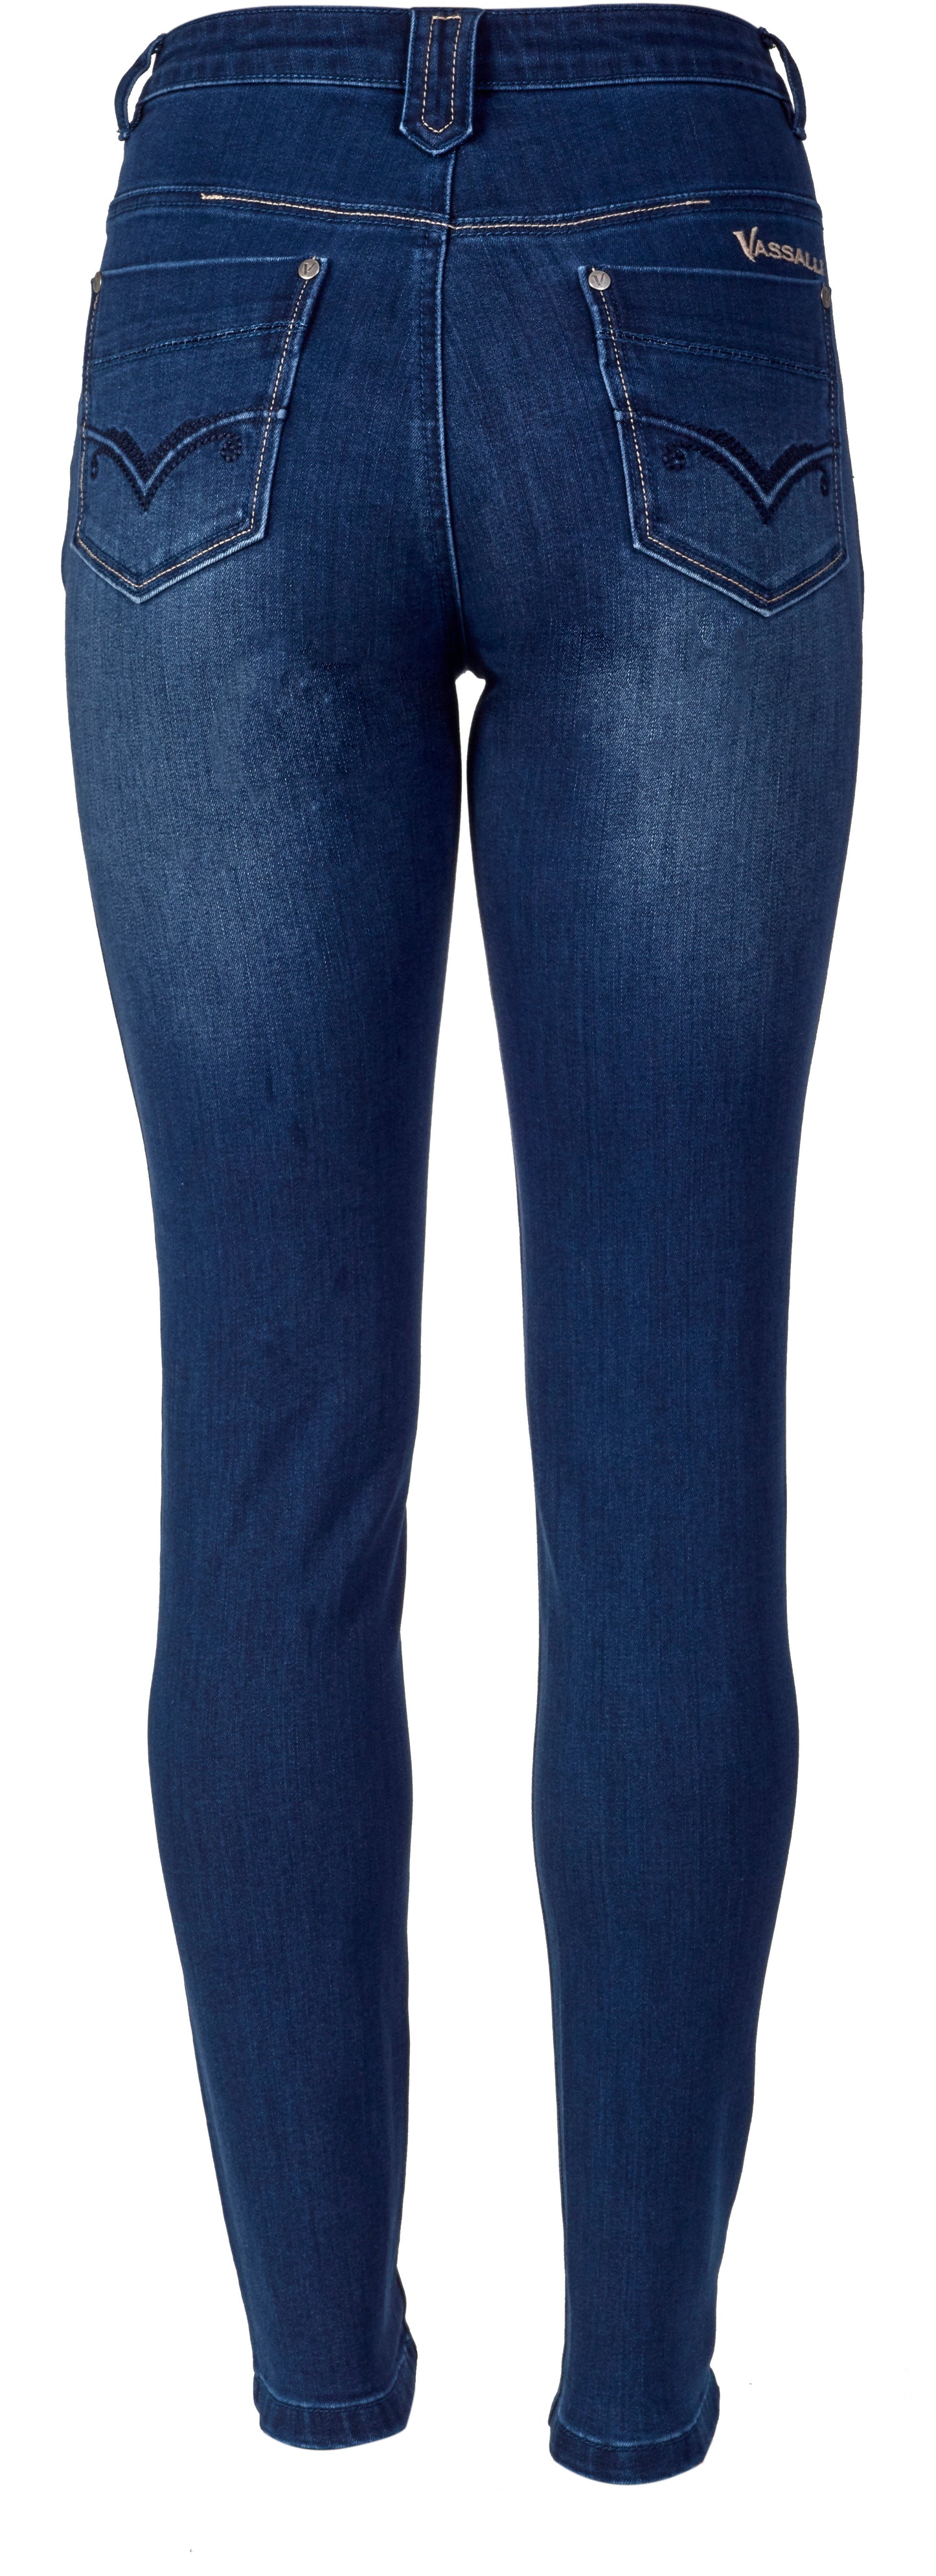 Vassalli - Skinny Leg Full Length Jean - Style 5780 - Blue Denim Sizes Available please enquire